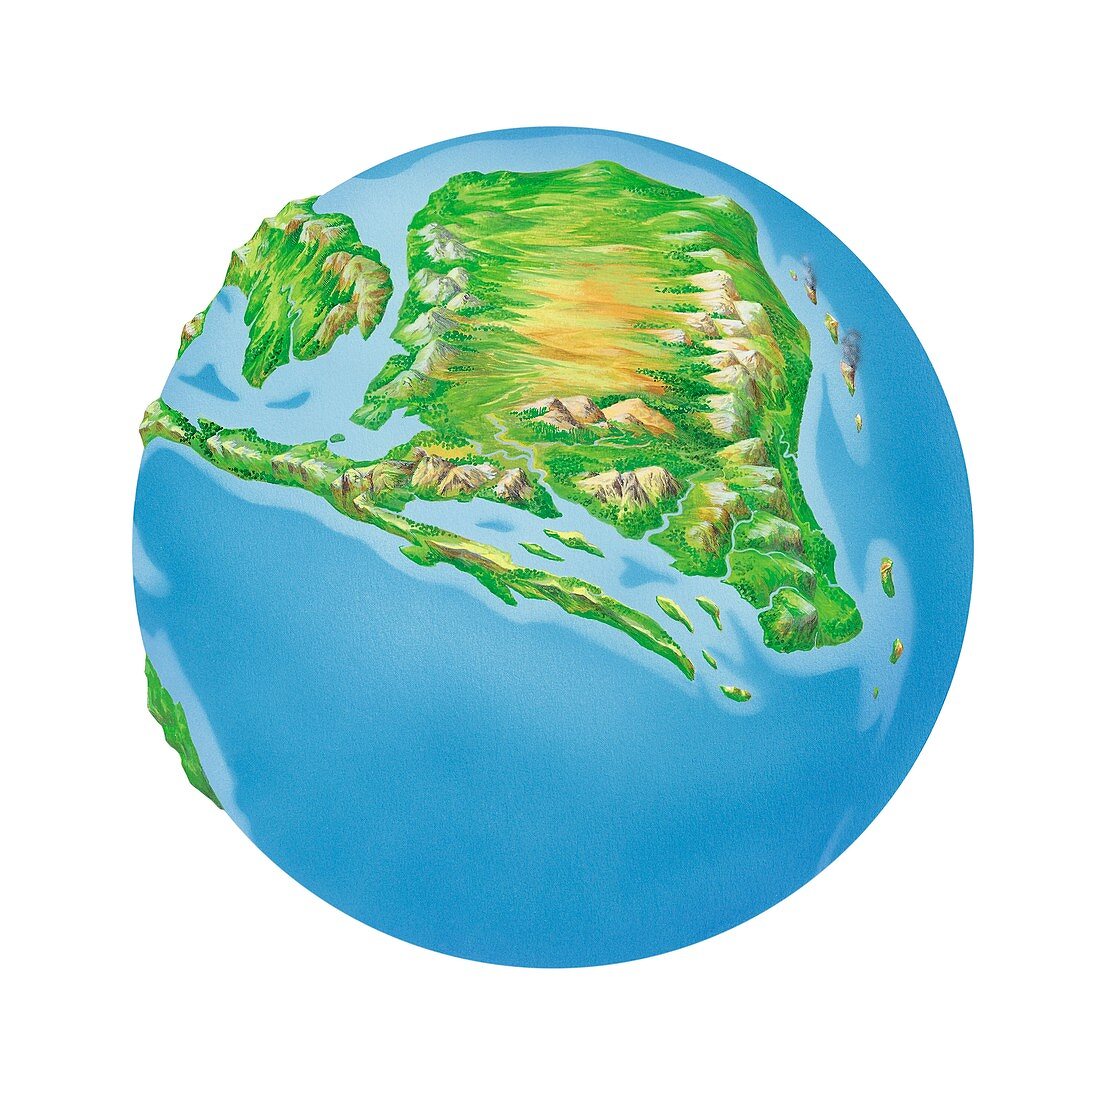 Jurassic Asia,Earth globe